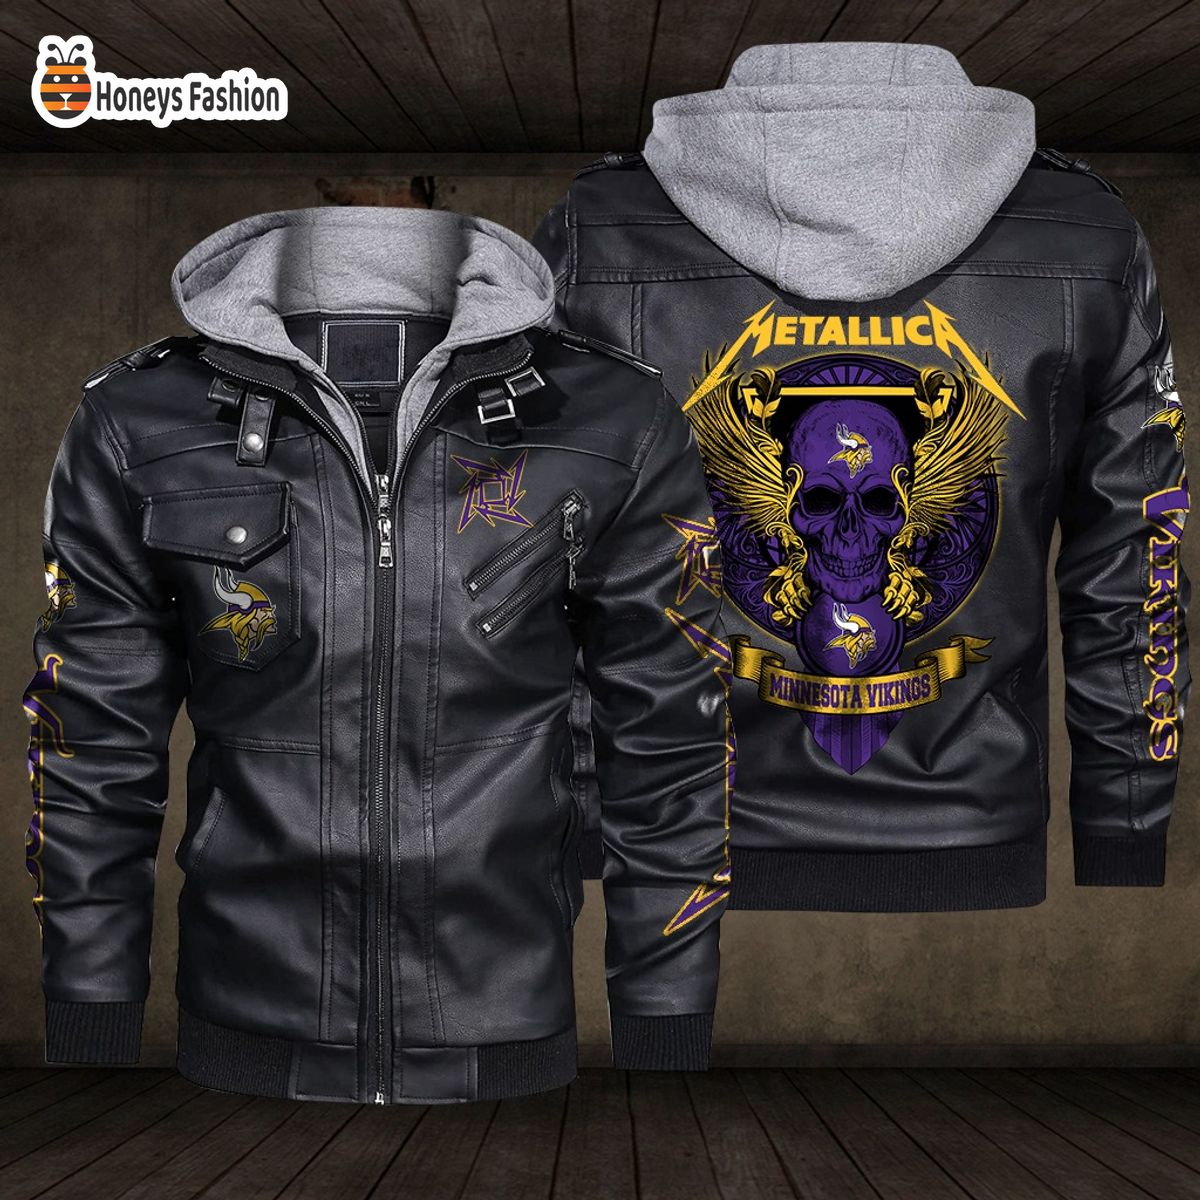 Minnesota Vikings NFL Metallica 2D PU Leather Jacket